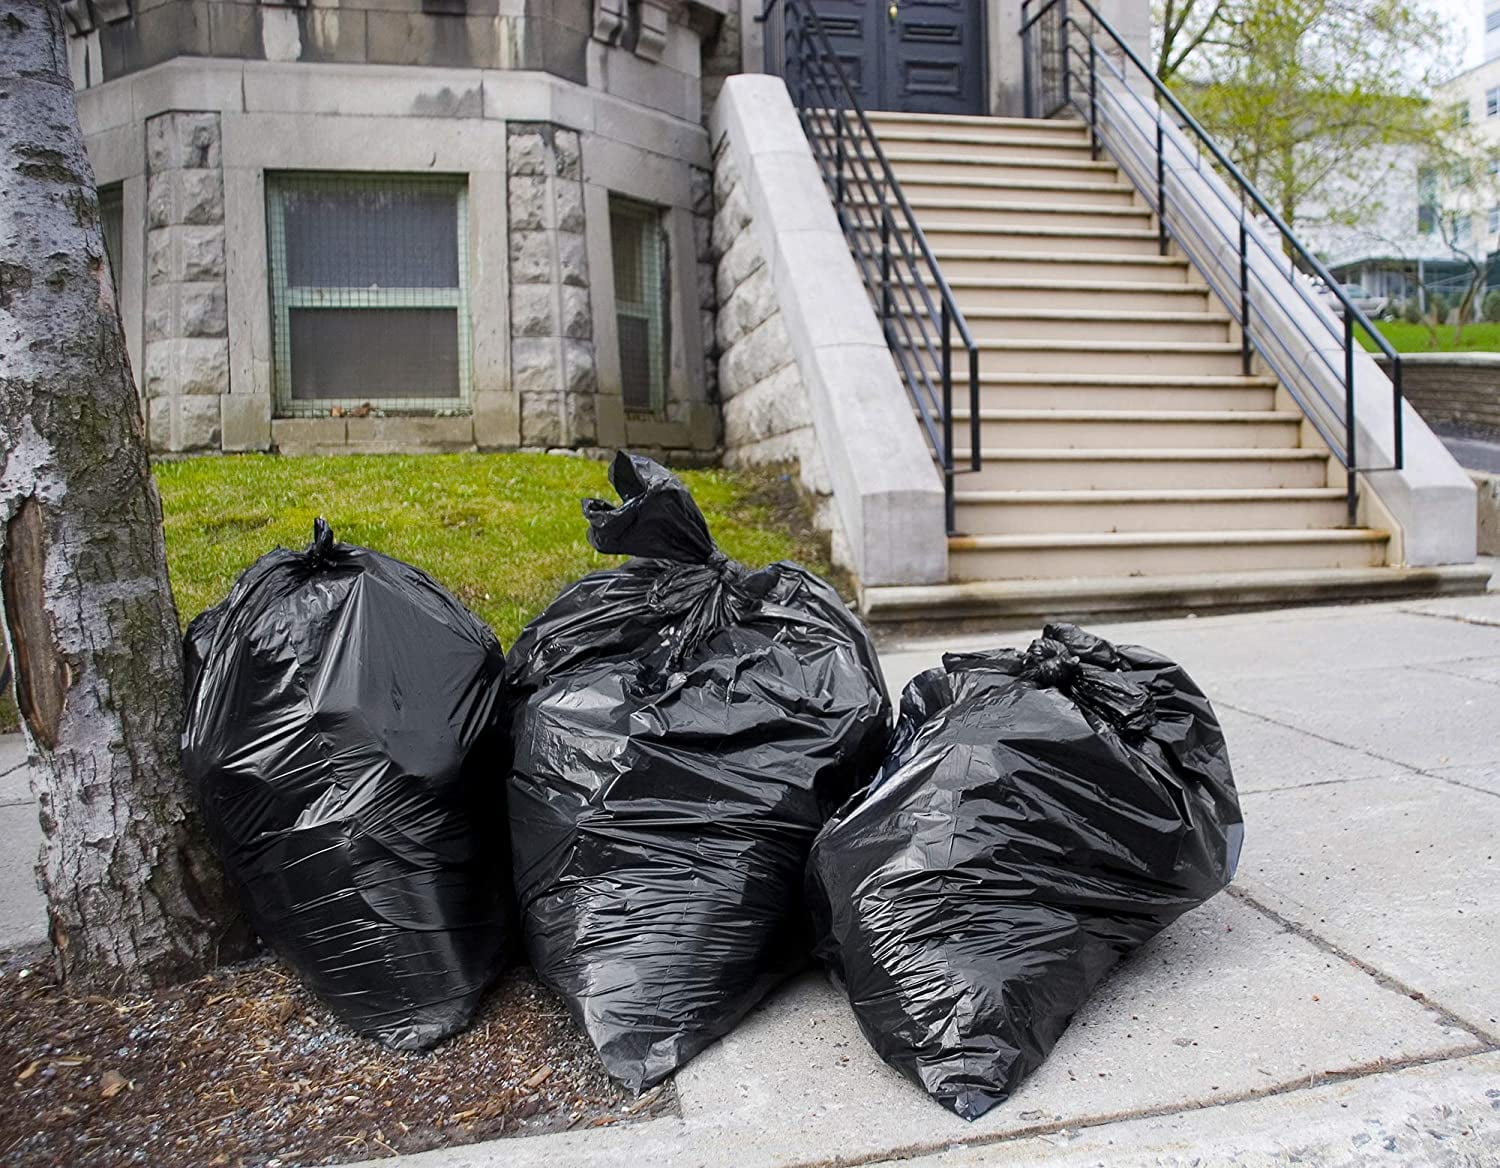 Plasticplace Heavy Duty Black Trash Bags 1.5 Mil 50 Count - 64 Gallon, 50  Count, 64 Gallon - Mariano's